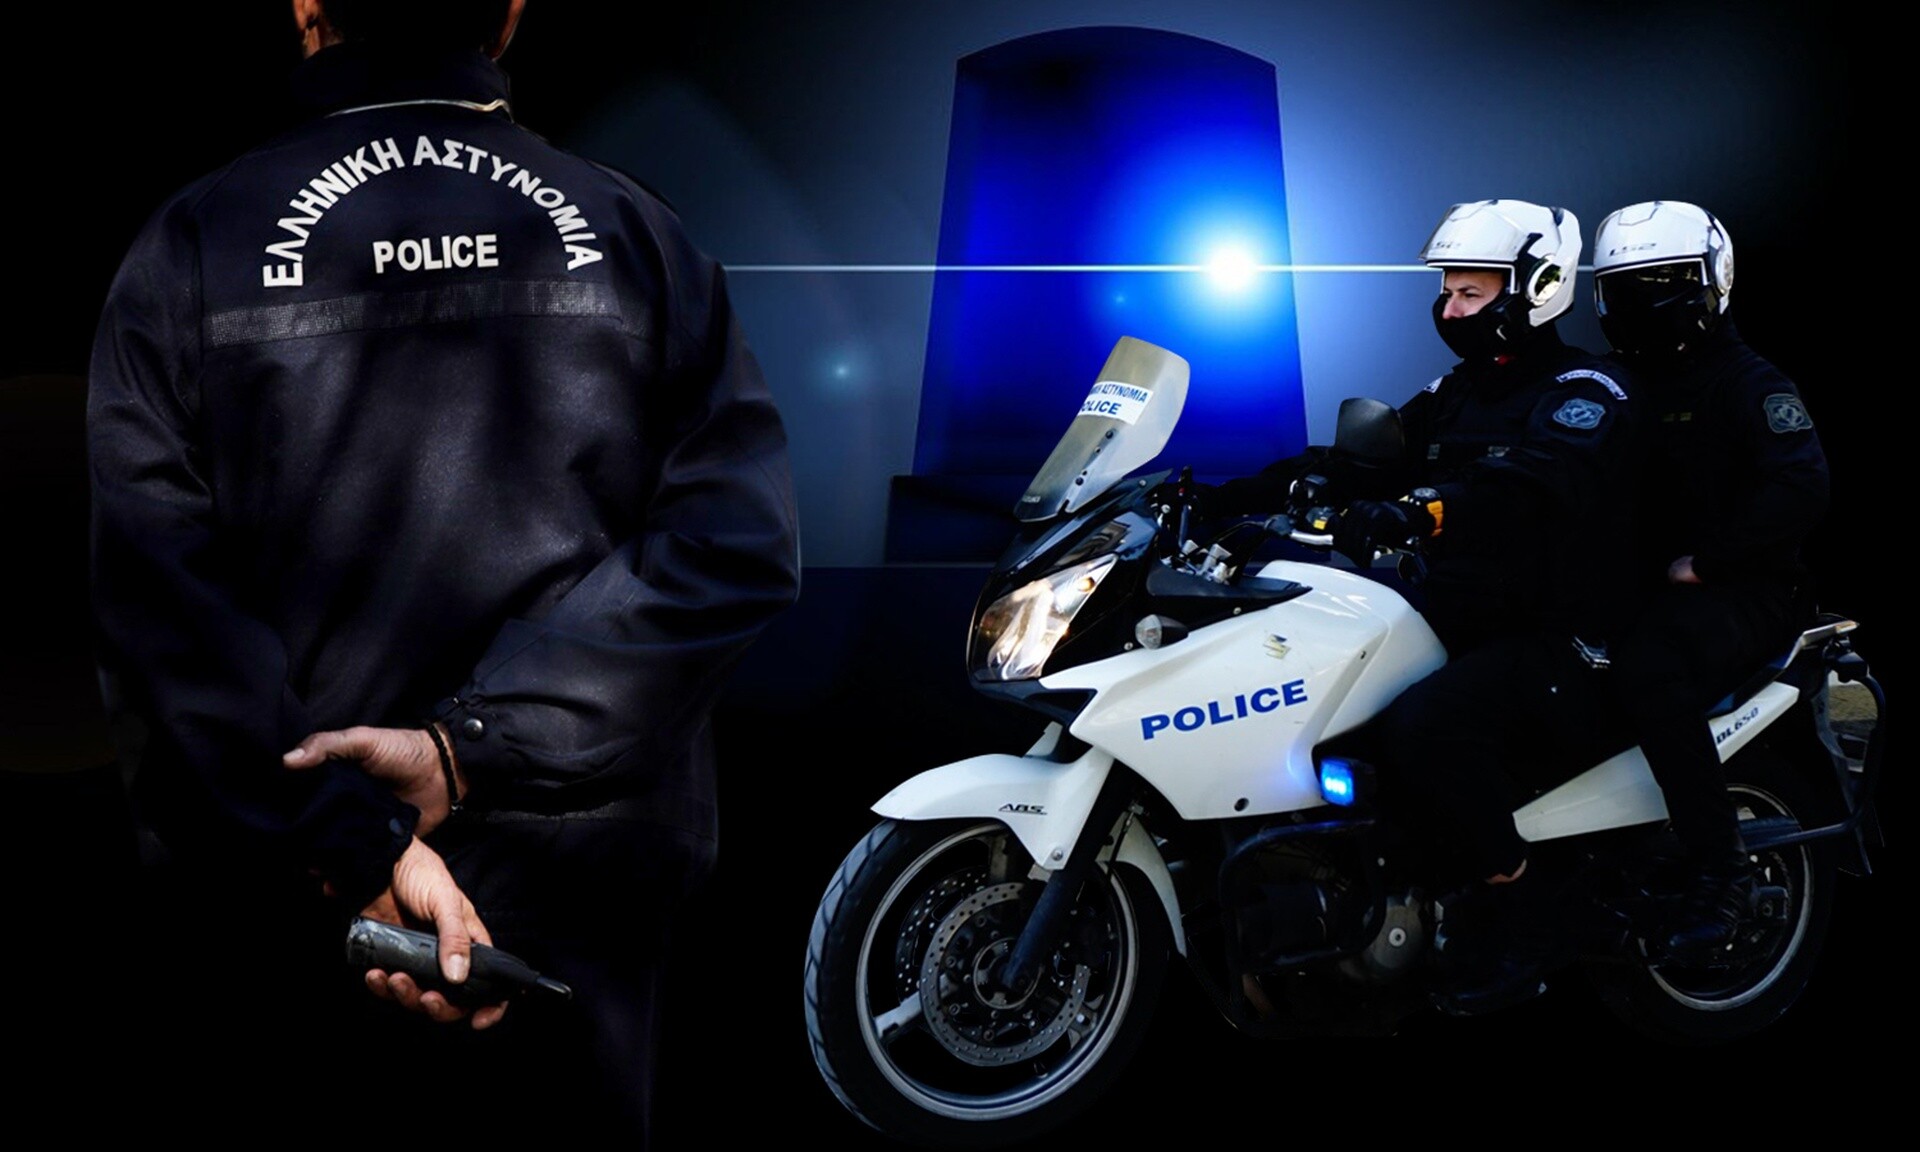 Ελληνική Αστυνομία: Οι πενιχροί μισθοί των Ειδικών Φρουρών - Τα κίνητρα και οι απογοητεύσεις